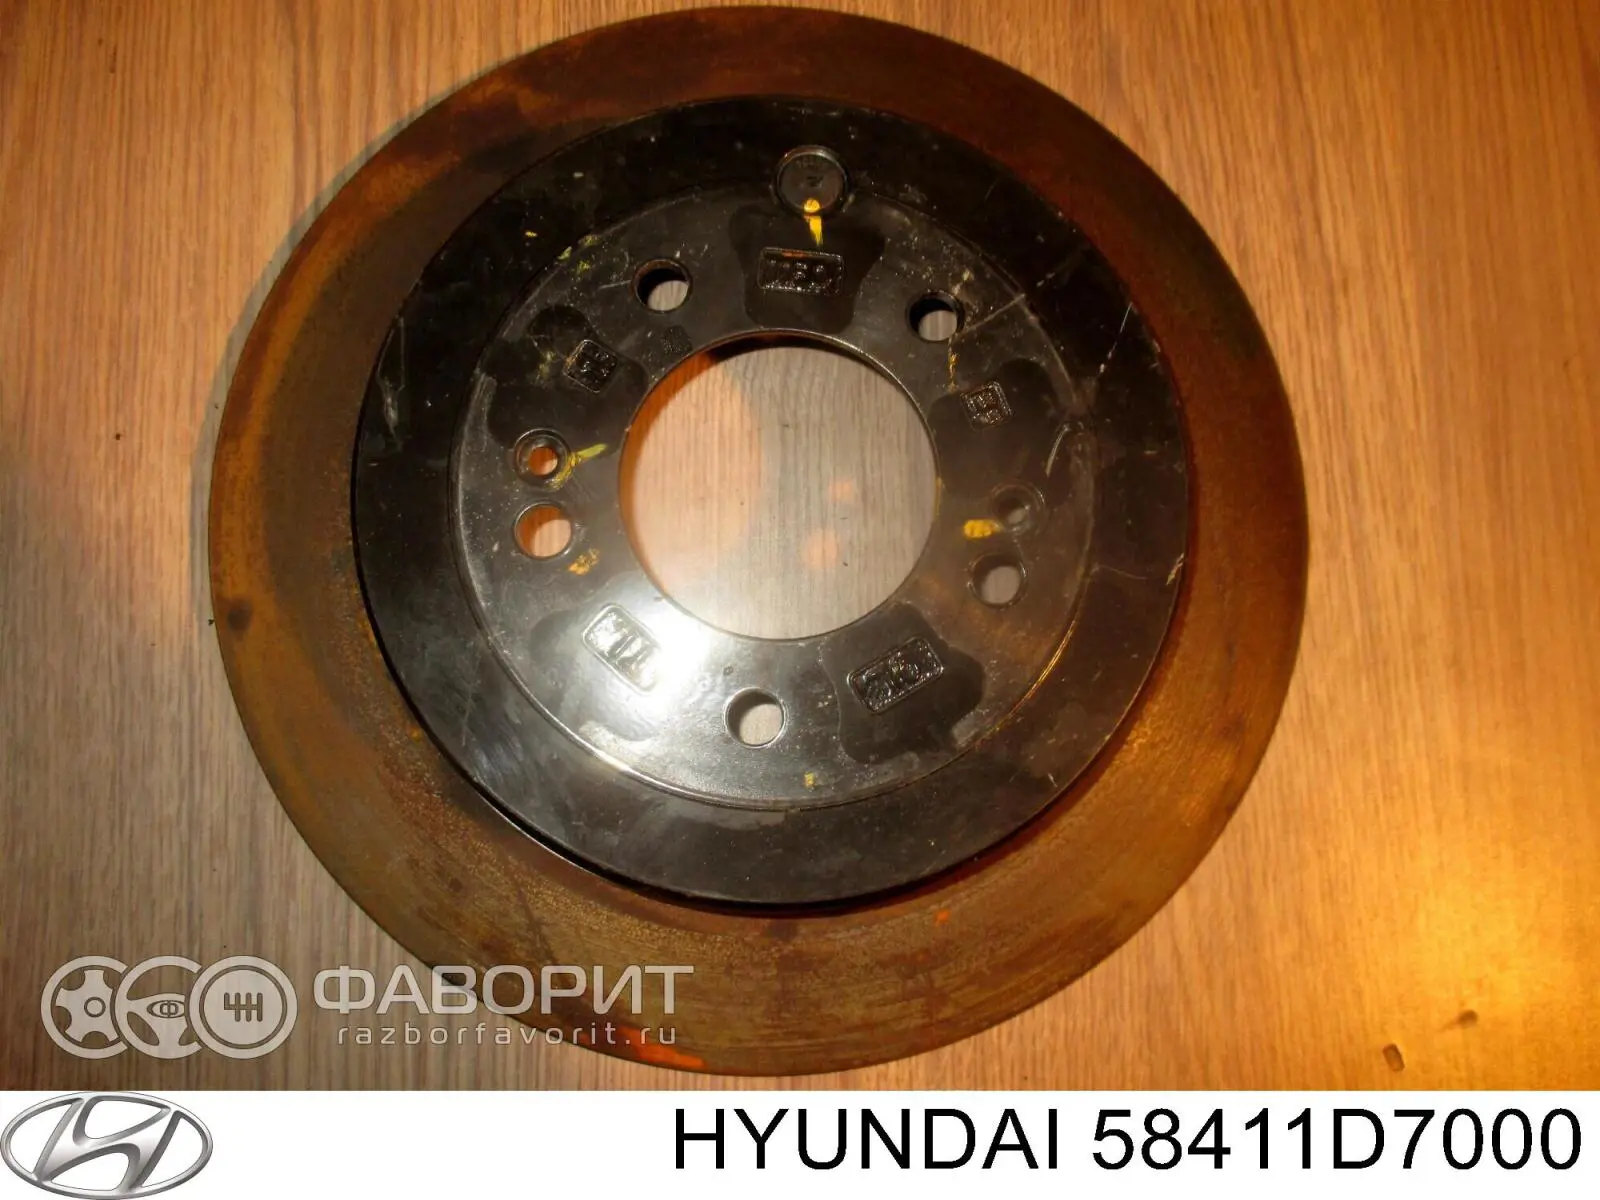 58411D7000 Hyundai/Kia disco do freio traseiro